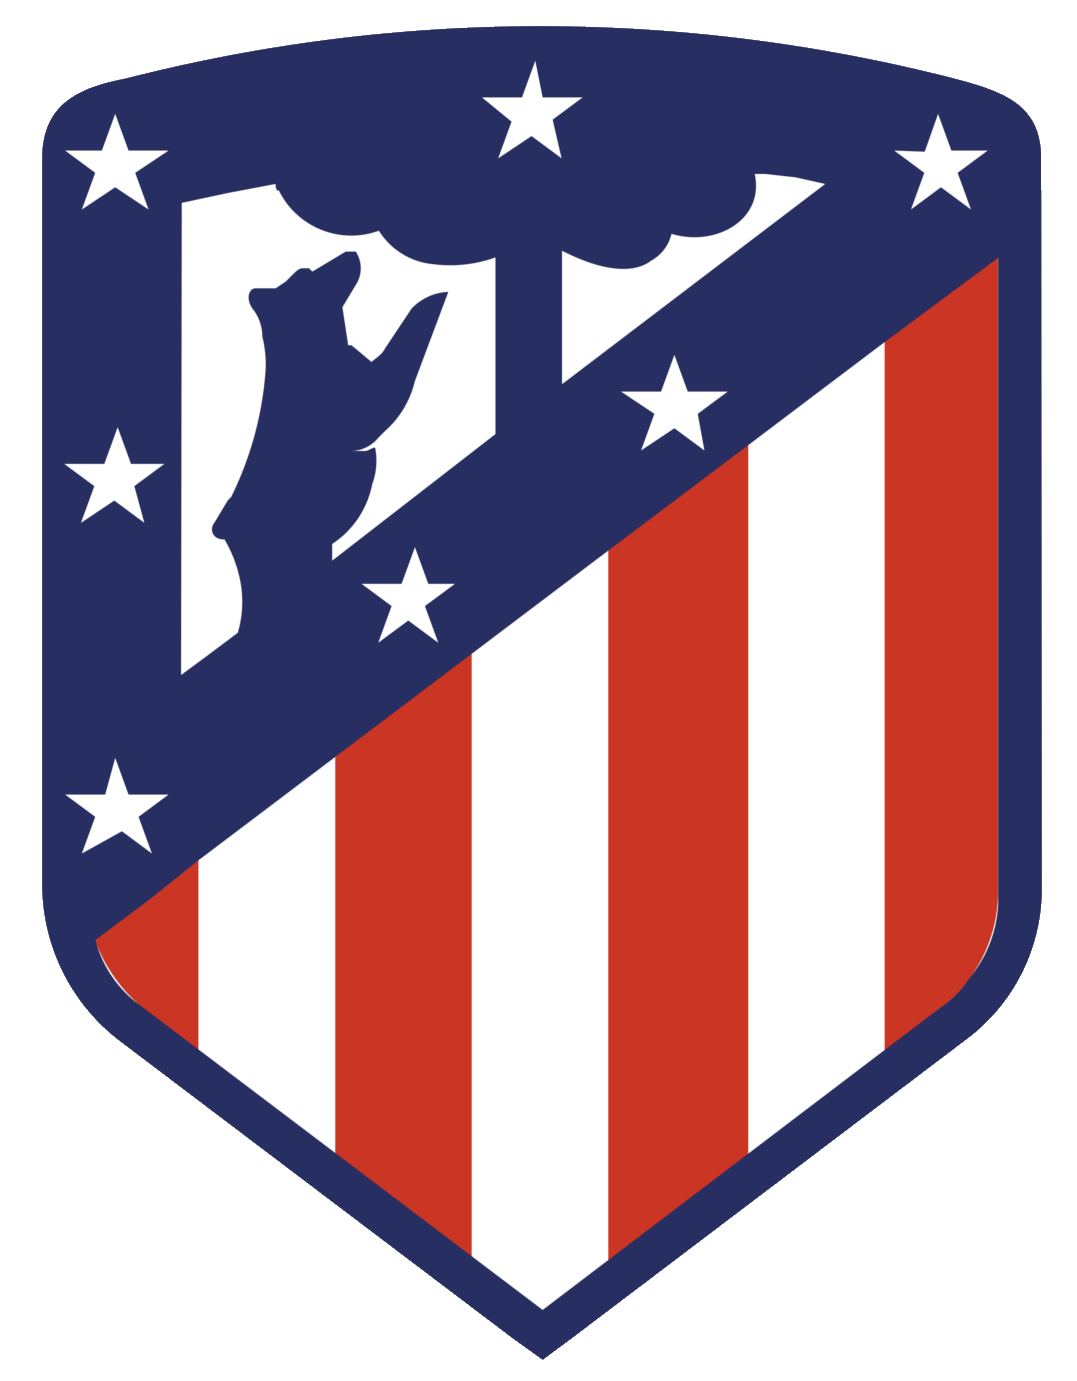 Wappen ehemals Club Atlético de Madrid